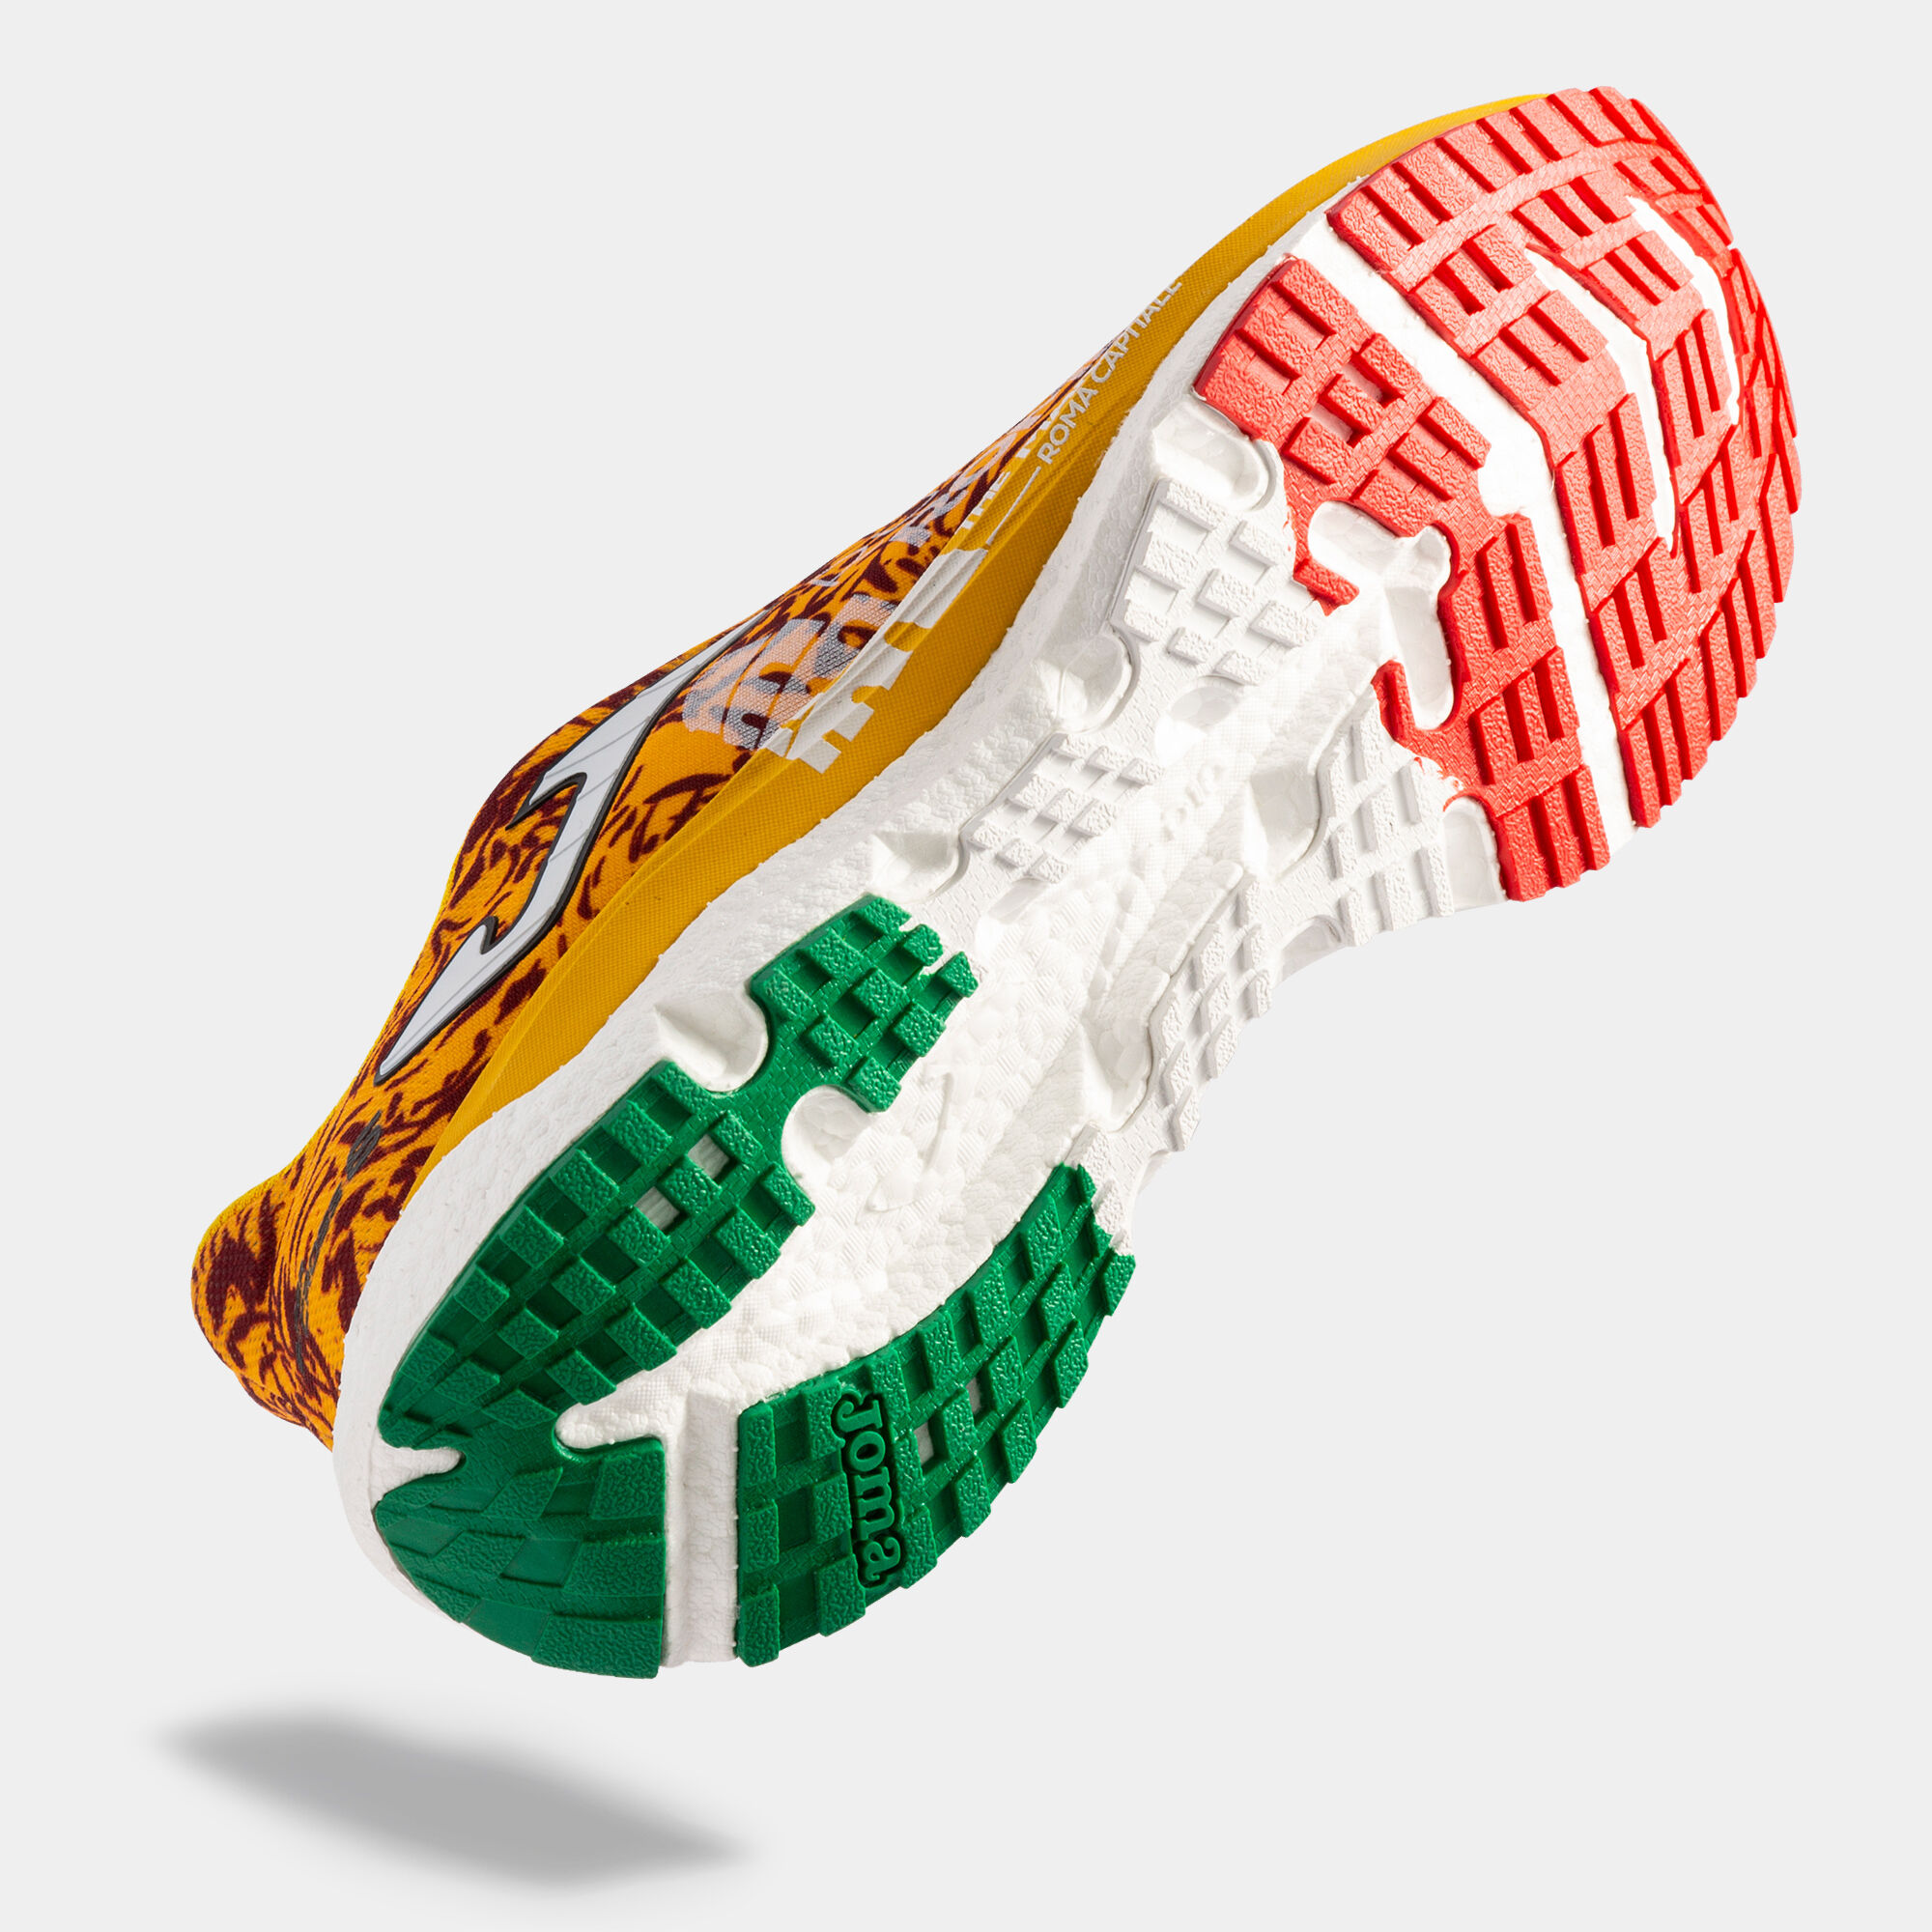 StclaircomoShops  Zapatillas Running - Rockaway Suede sneakers - Joma  Marathon: características y opiniones